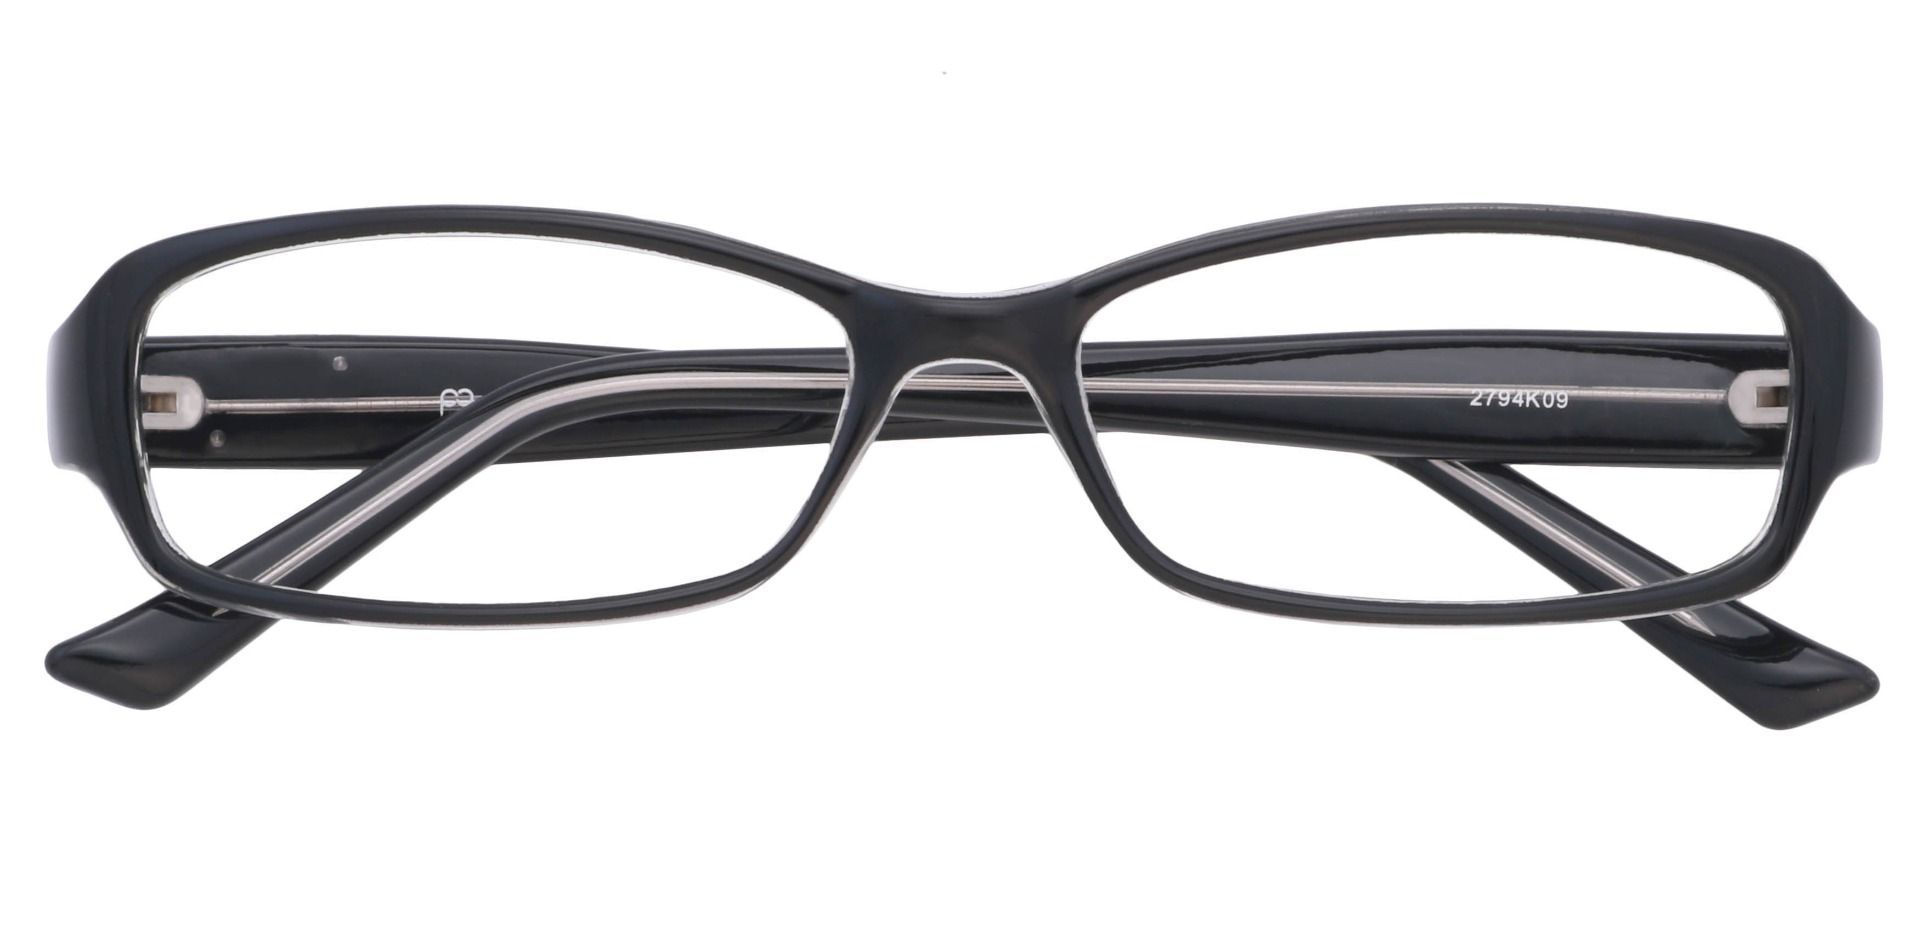 Cicely Rectangle Eyeglasses Frame - Black